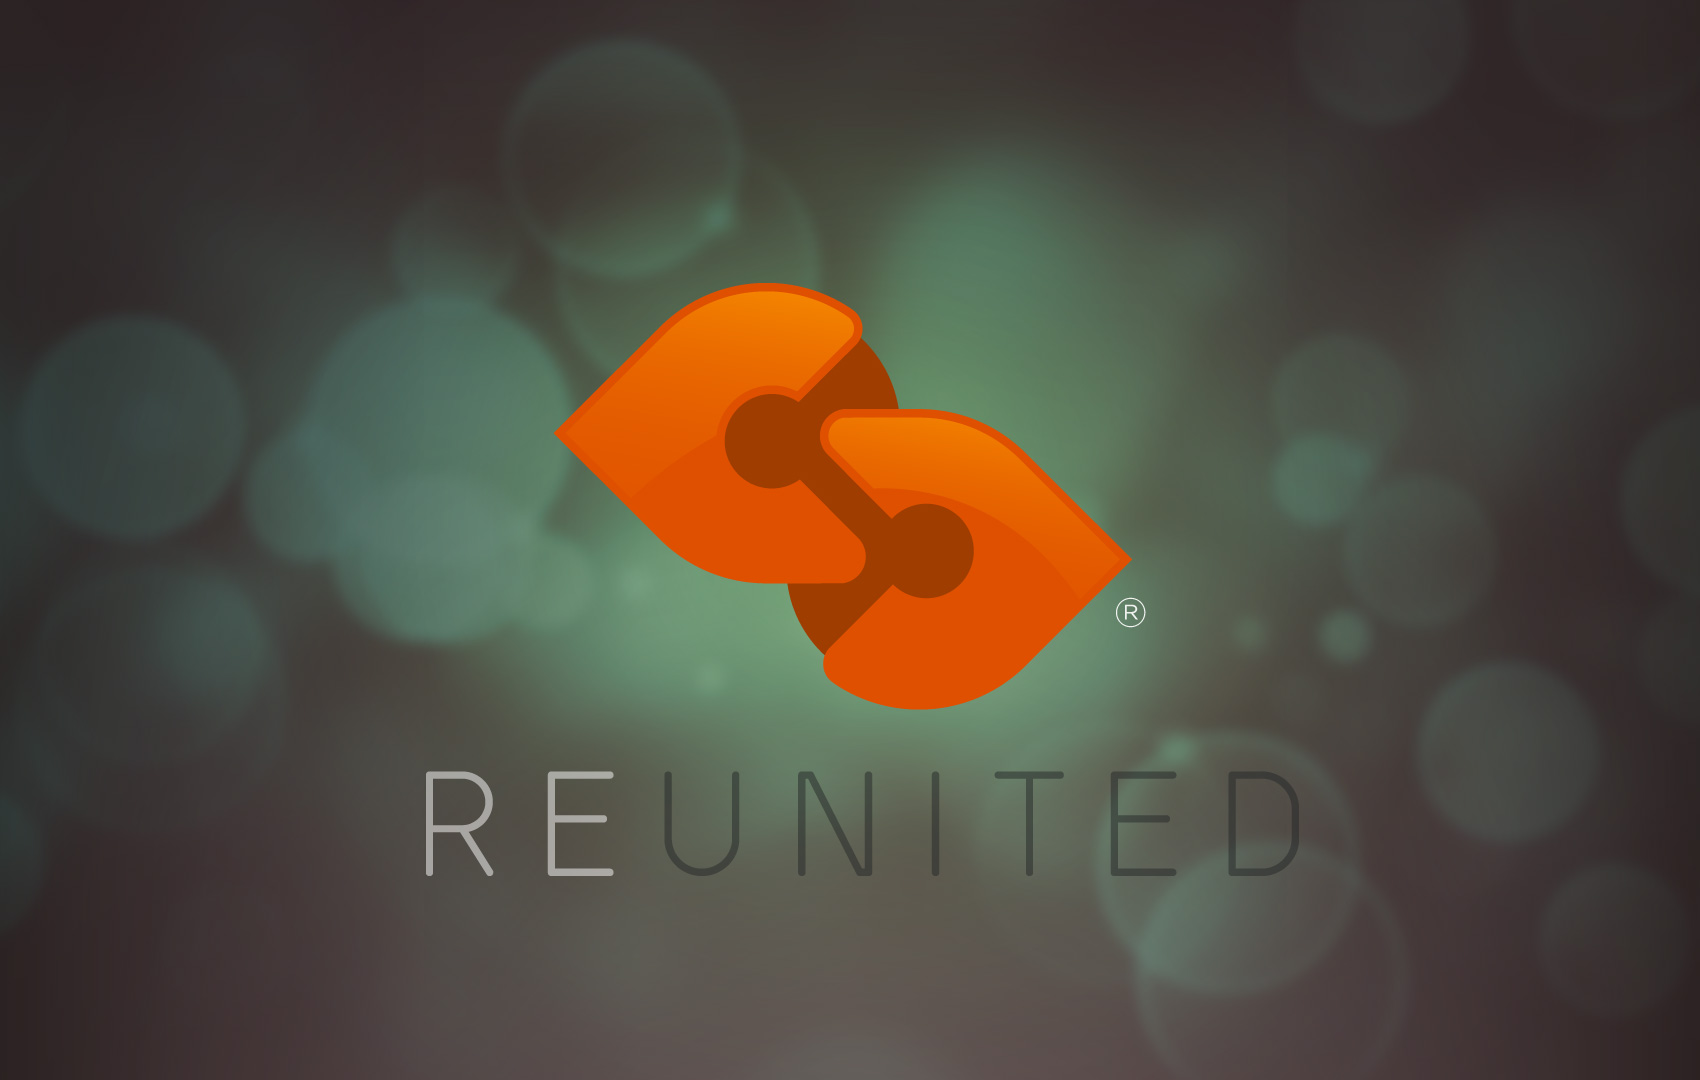 Reunited logo design by hibriden